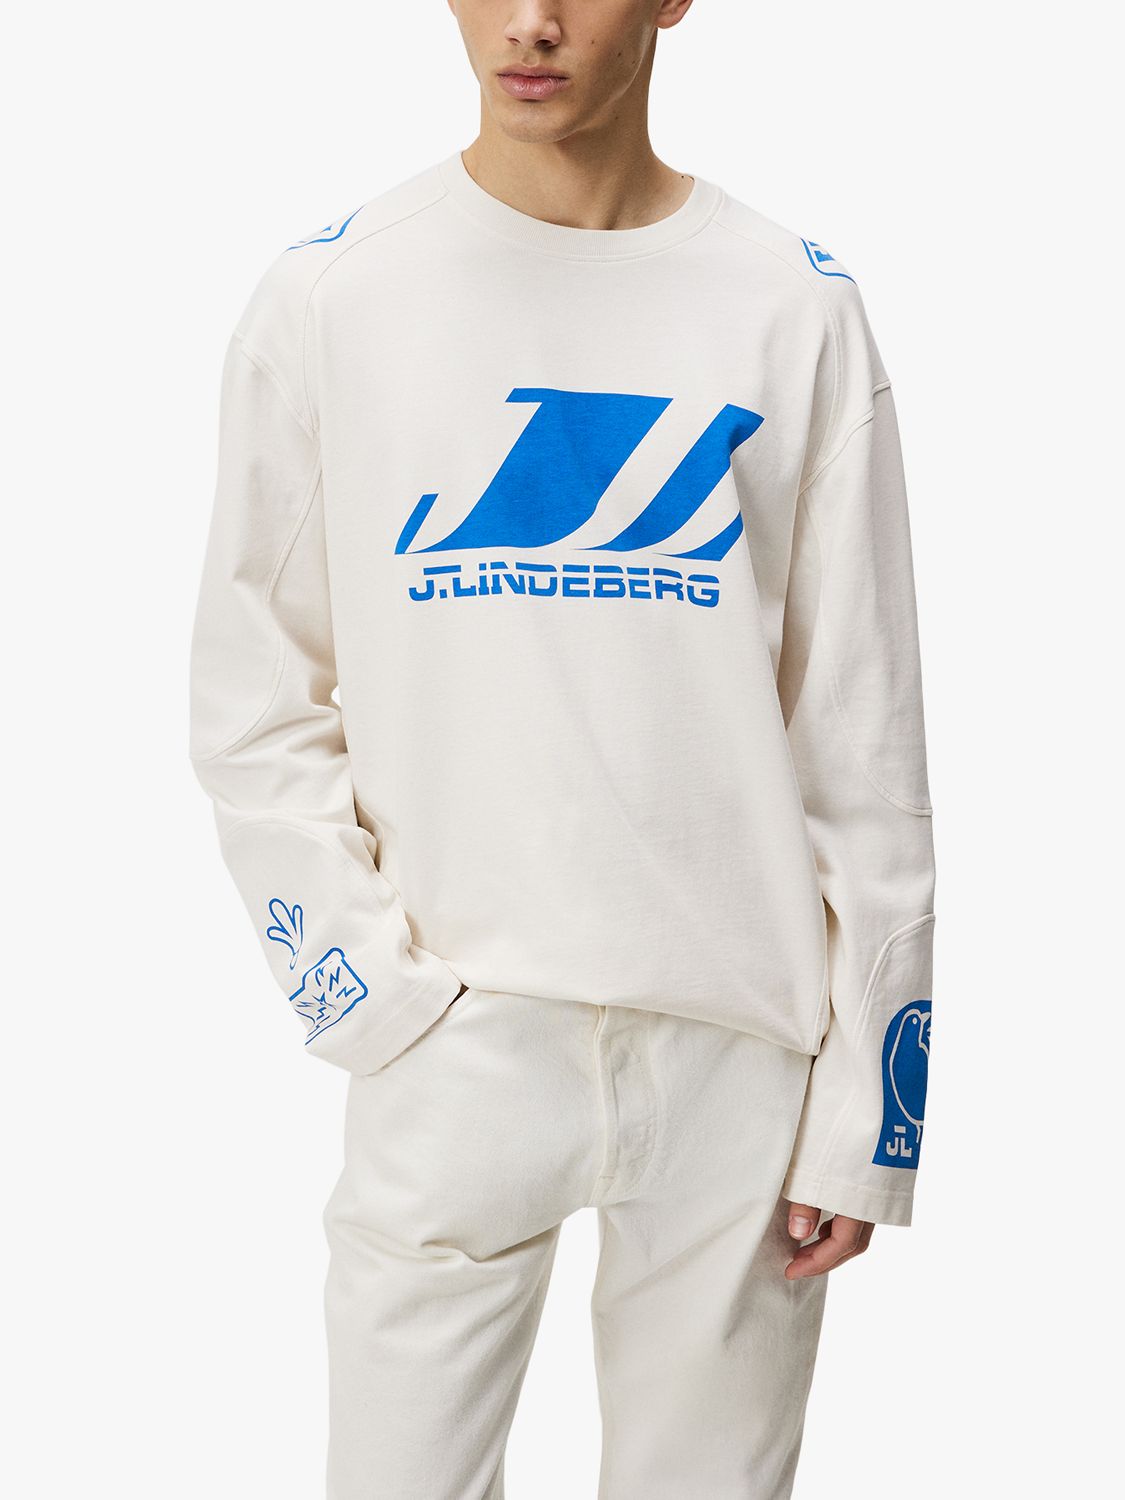 J.Lindeberg Derk Long Sleeve Moto T-Shirt, White/Blue, S